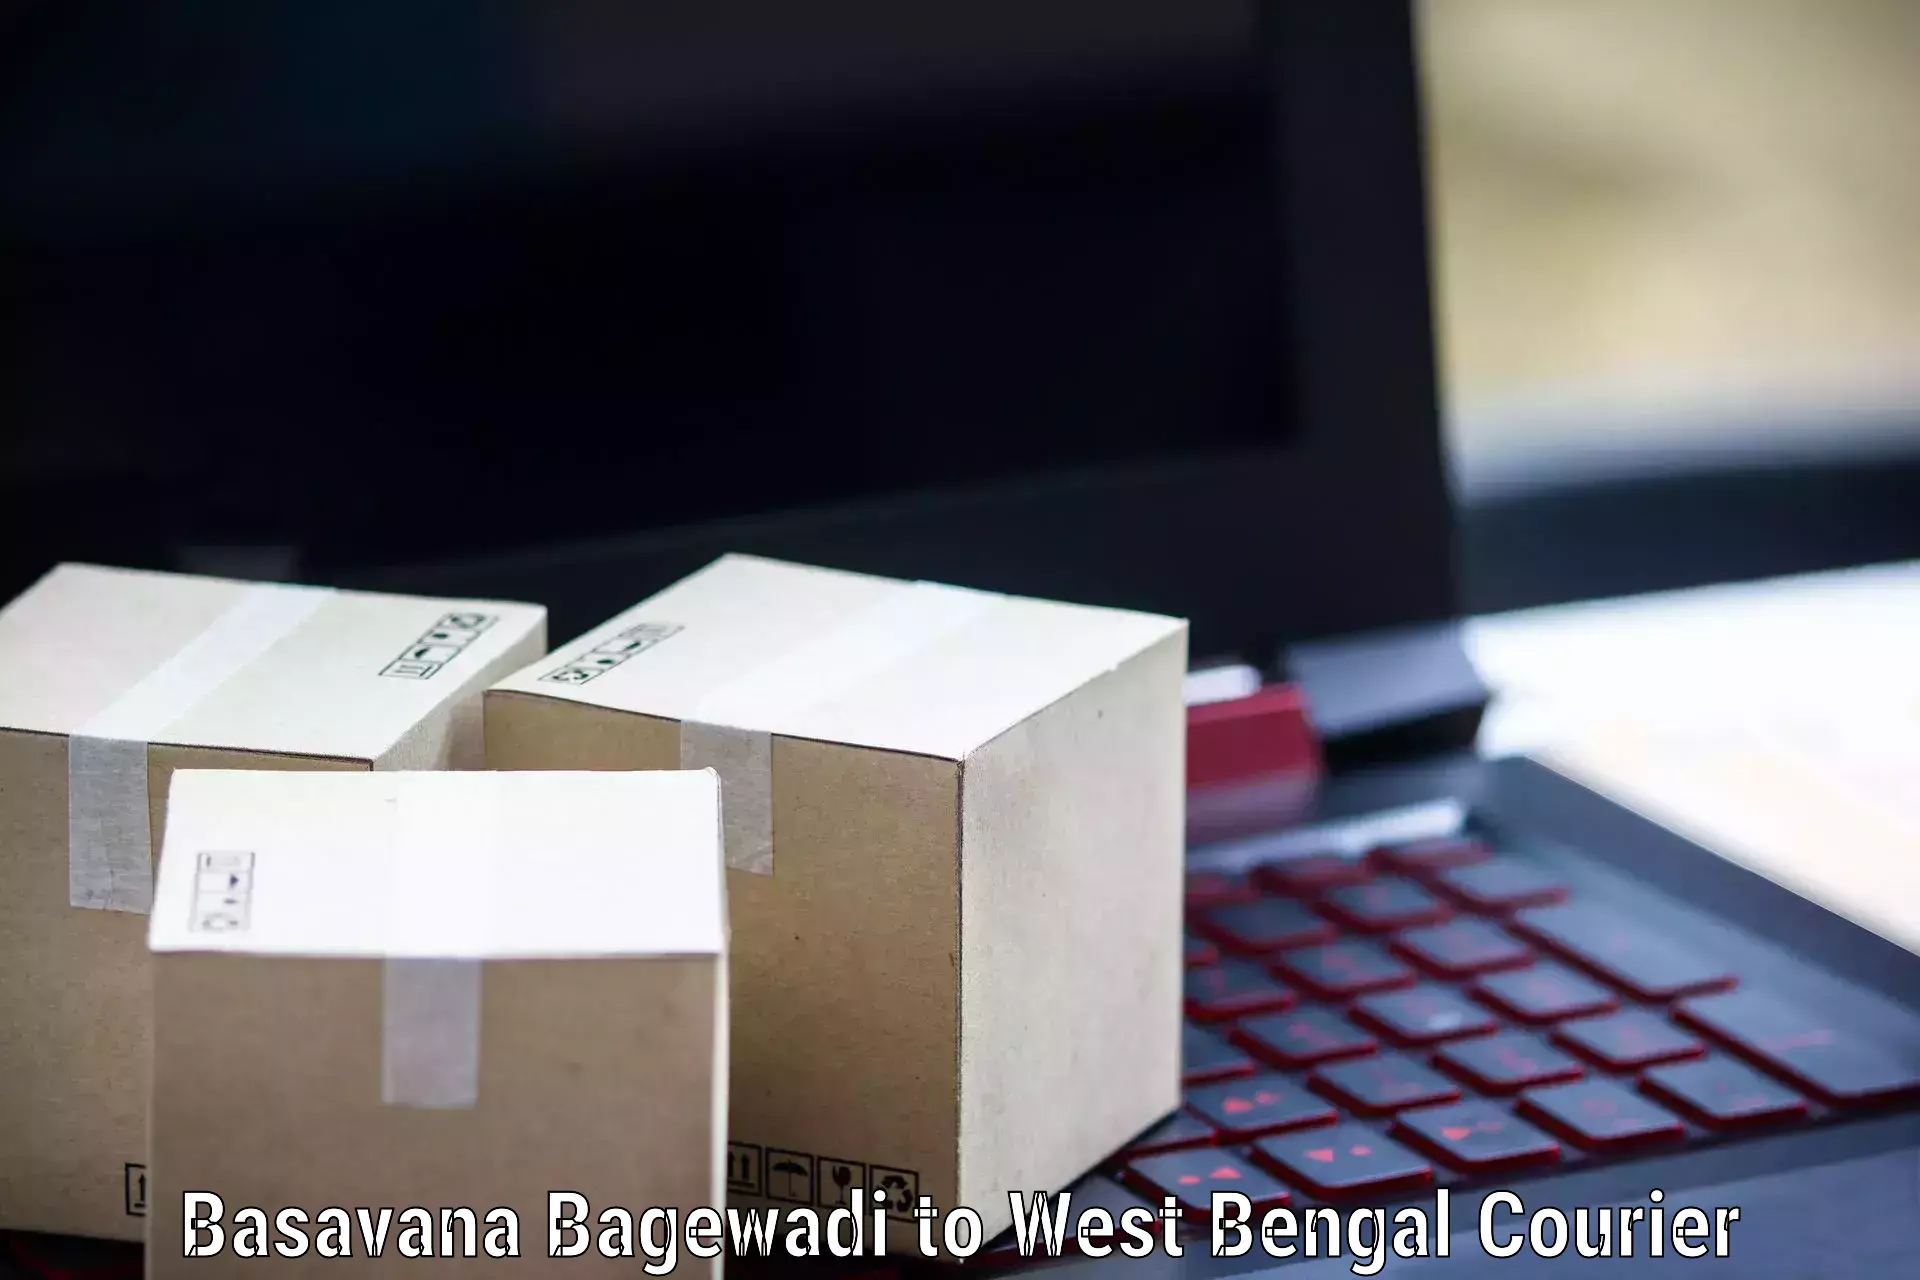 Ocean freight courier Basavana Bagewadi to Kolkata